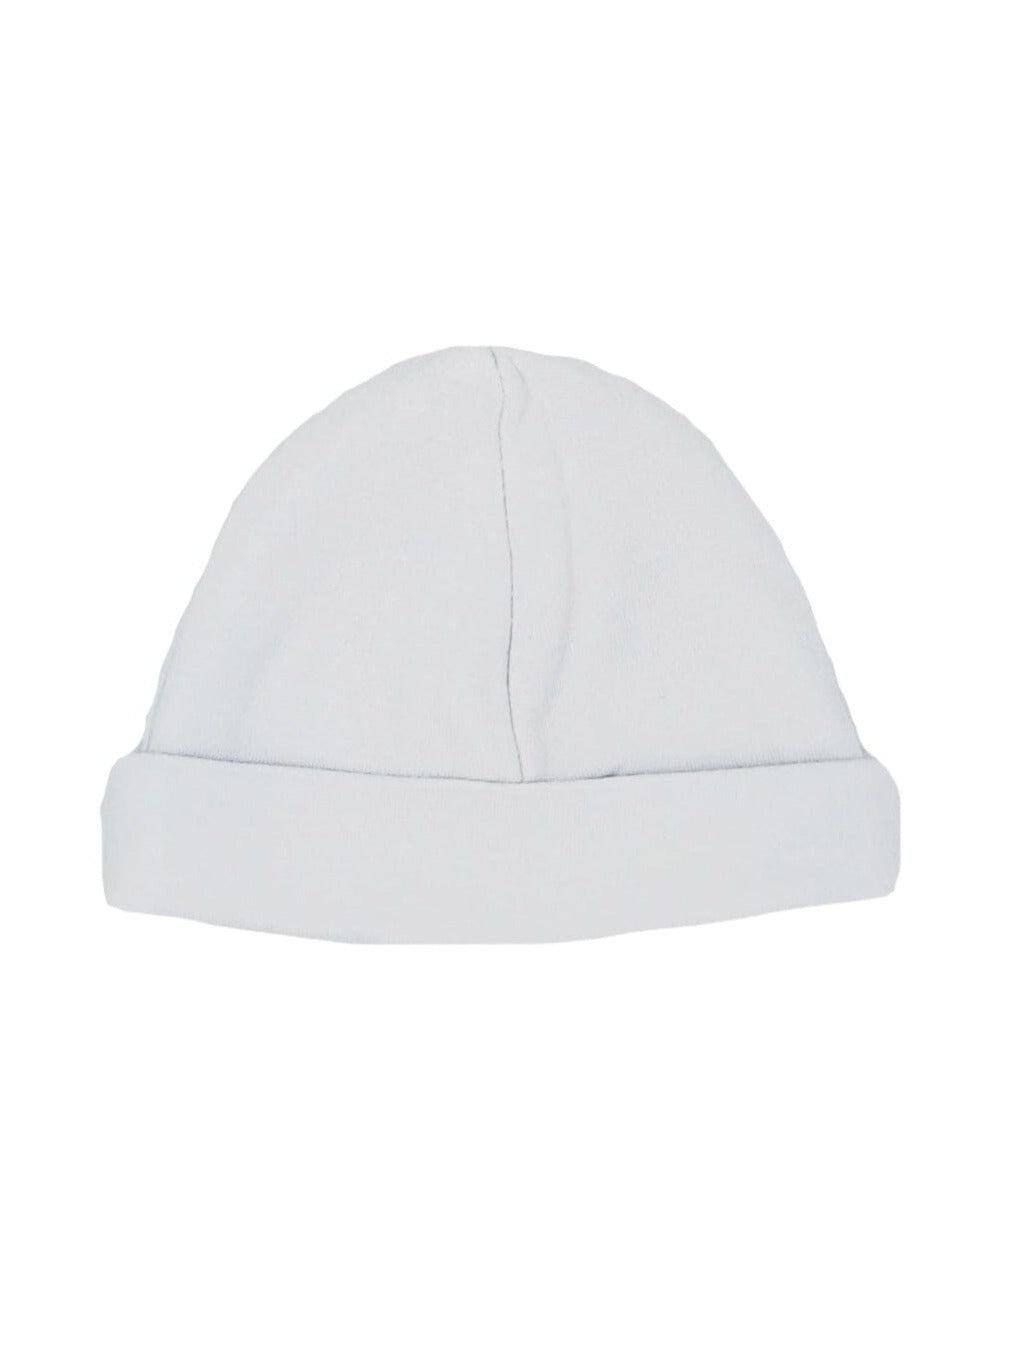 Pale Blue Round Premature Baby Hat - Hat - Dandelion